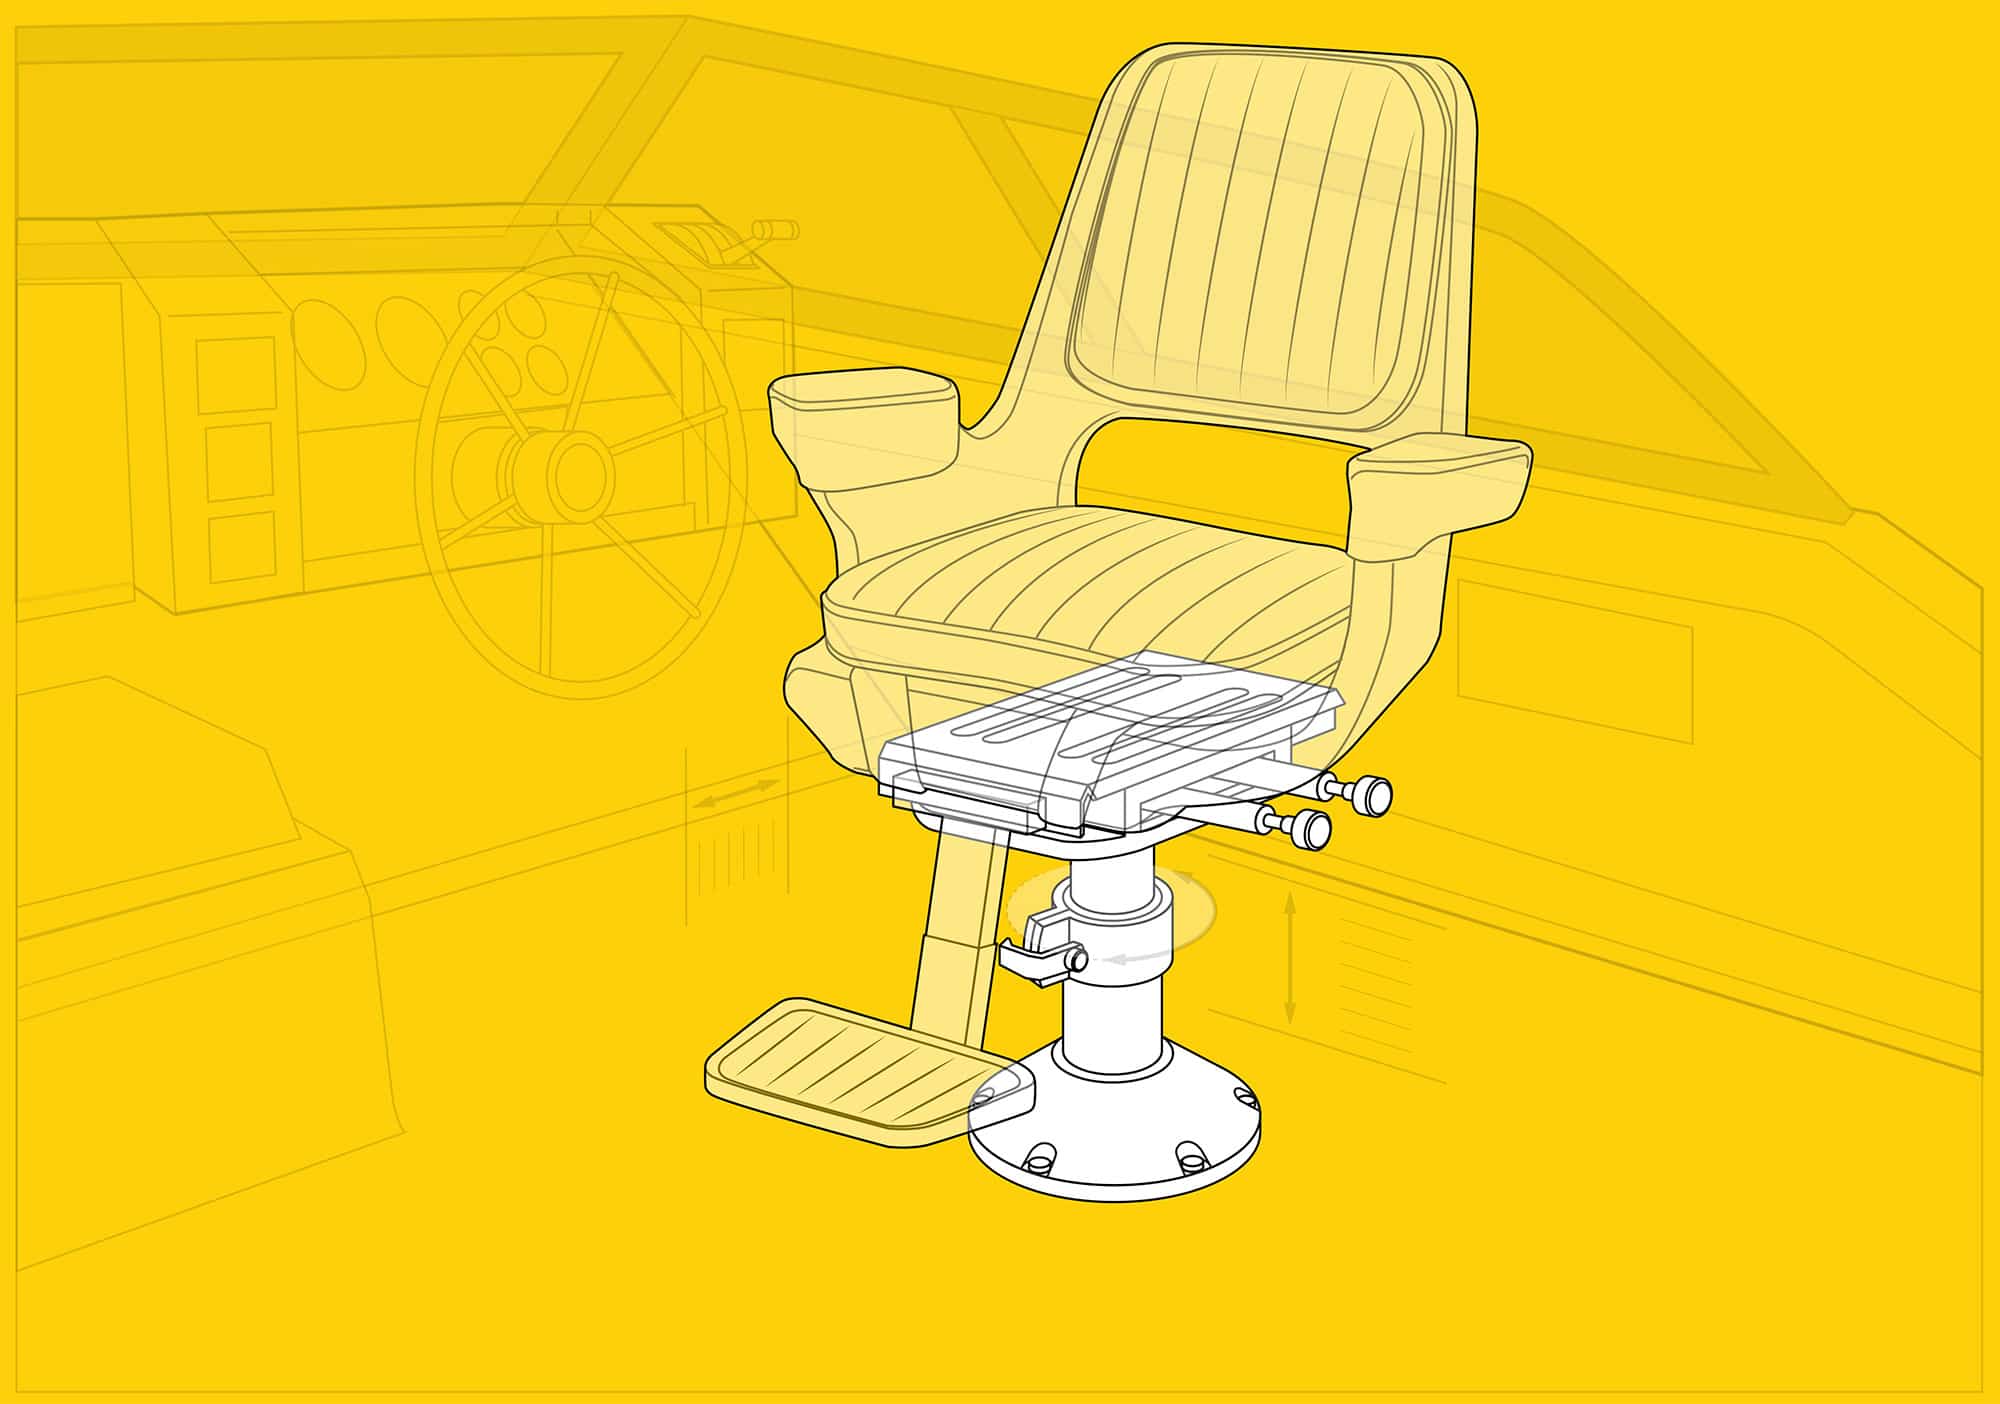 https://www.boatingmag.com/wp-content/uploads/2021/09/BTG0320-Adjustable-Pedestal-Seating1.jpg